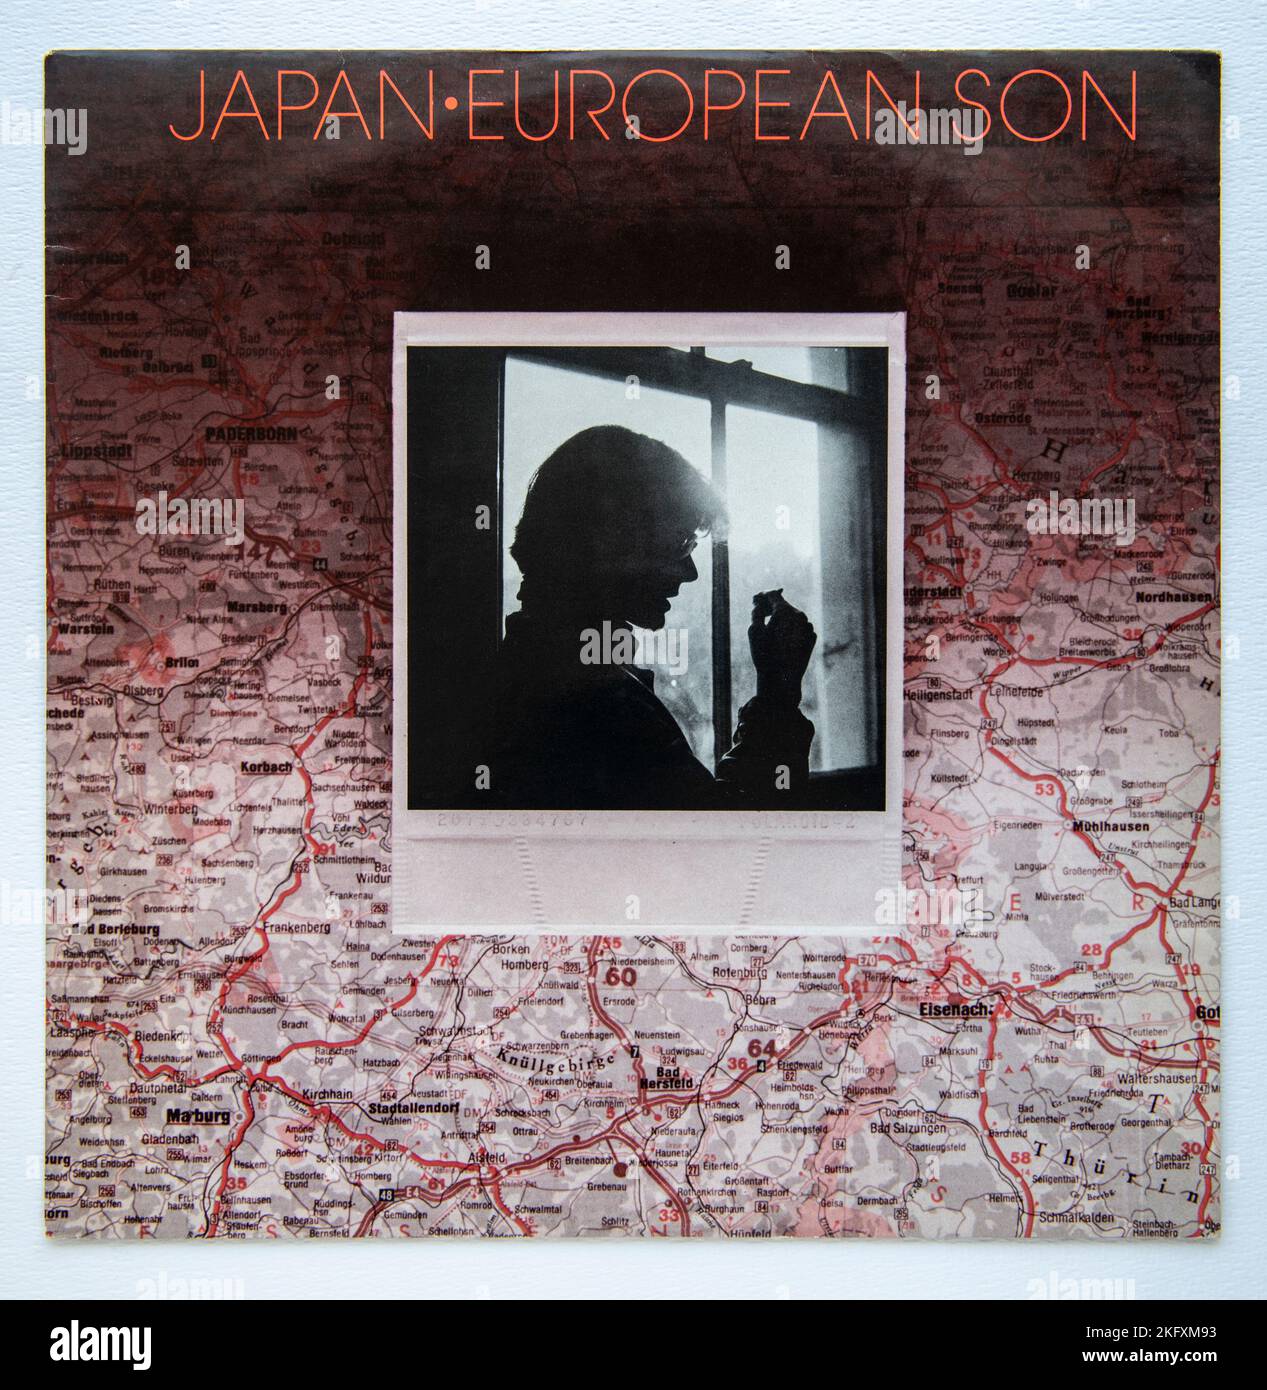 Copertina della versione singola da 12 pollici di European Son by Japan, rilasciata nel 1982 Foto Stock